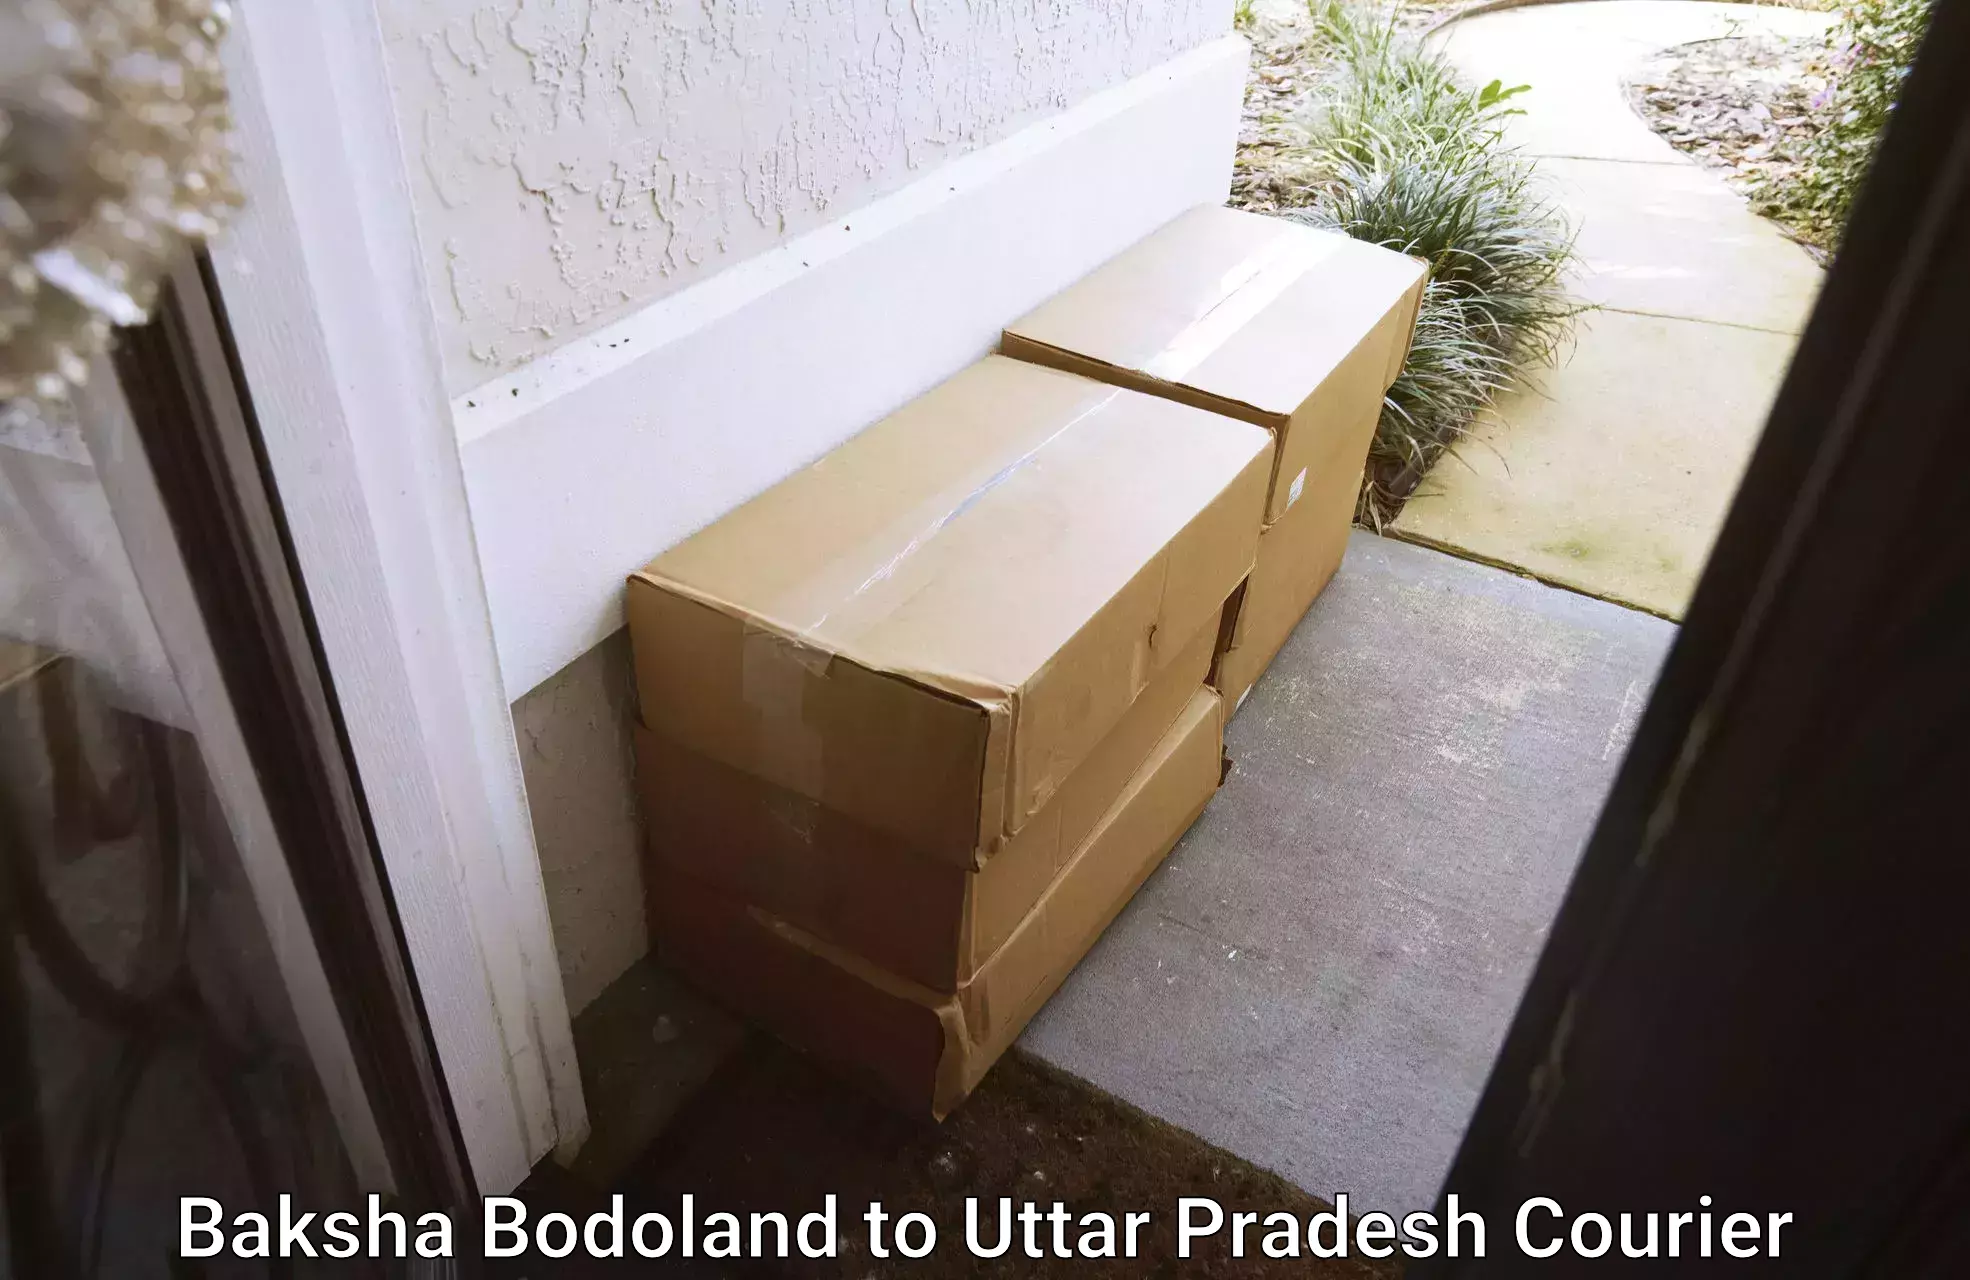 Individual parcel service Baksha Bodoland to Uttar Pradesh